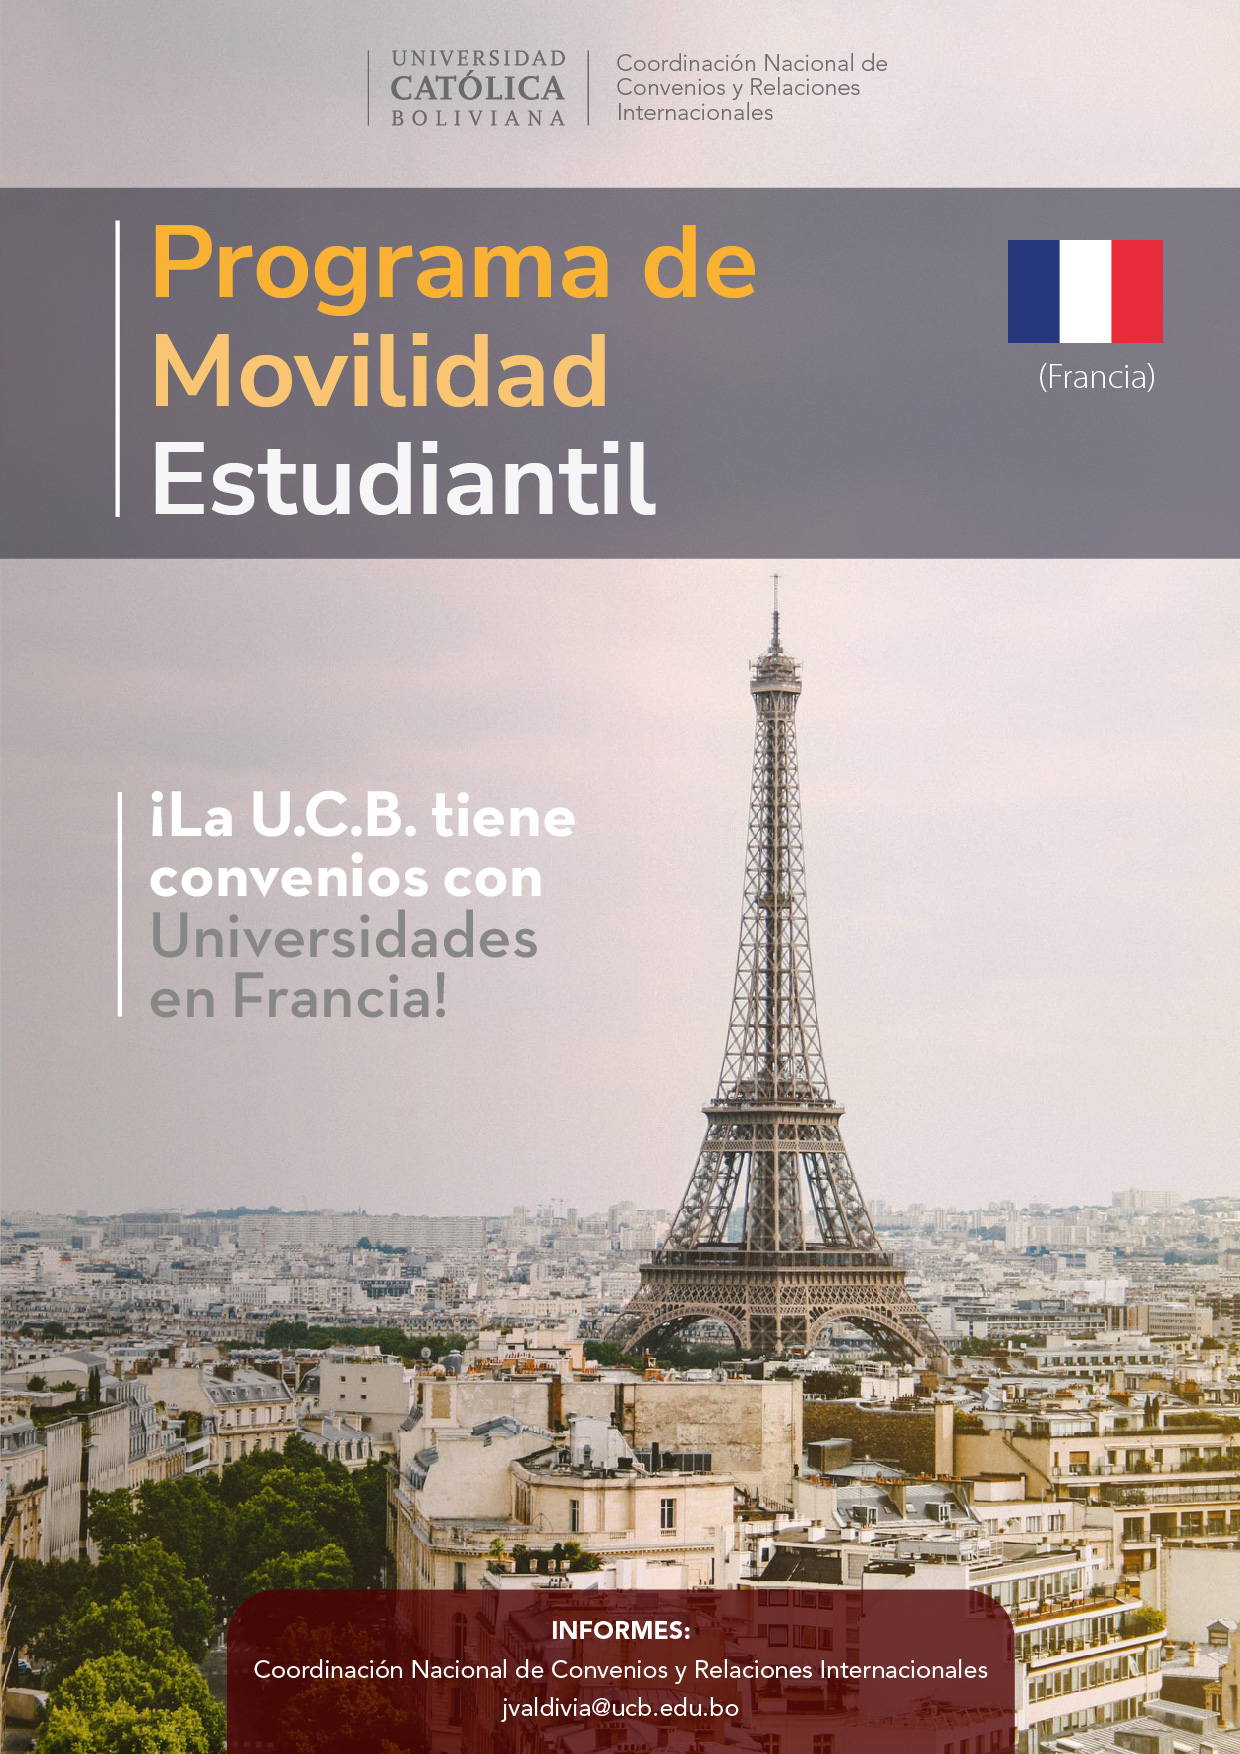 El Programa de Movilidad Estudiantil UCB por el Mundo cuenta con universidades de alto prestigio en Francia.